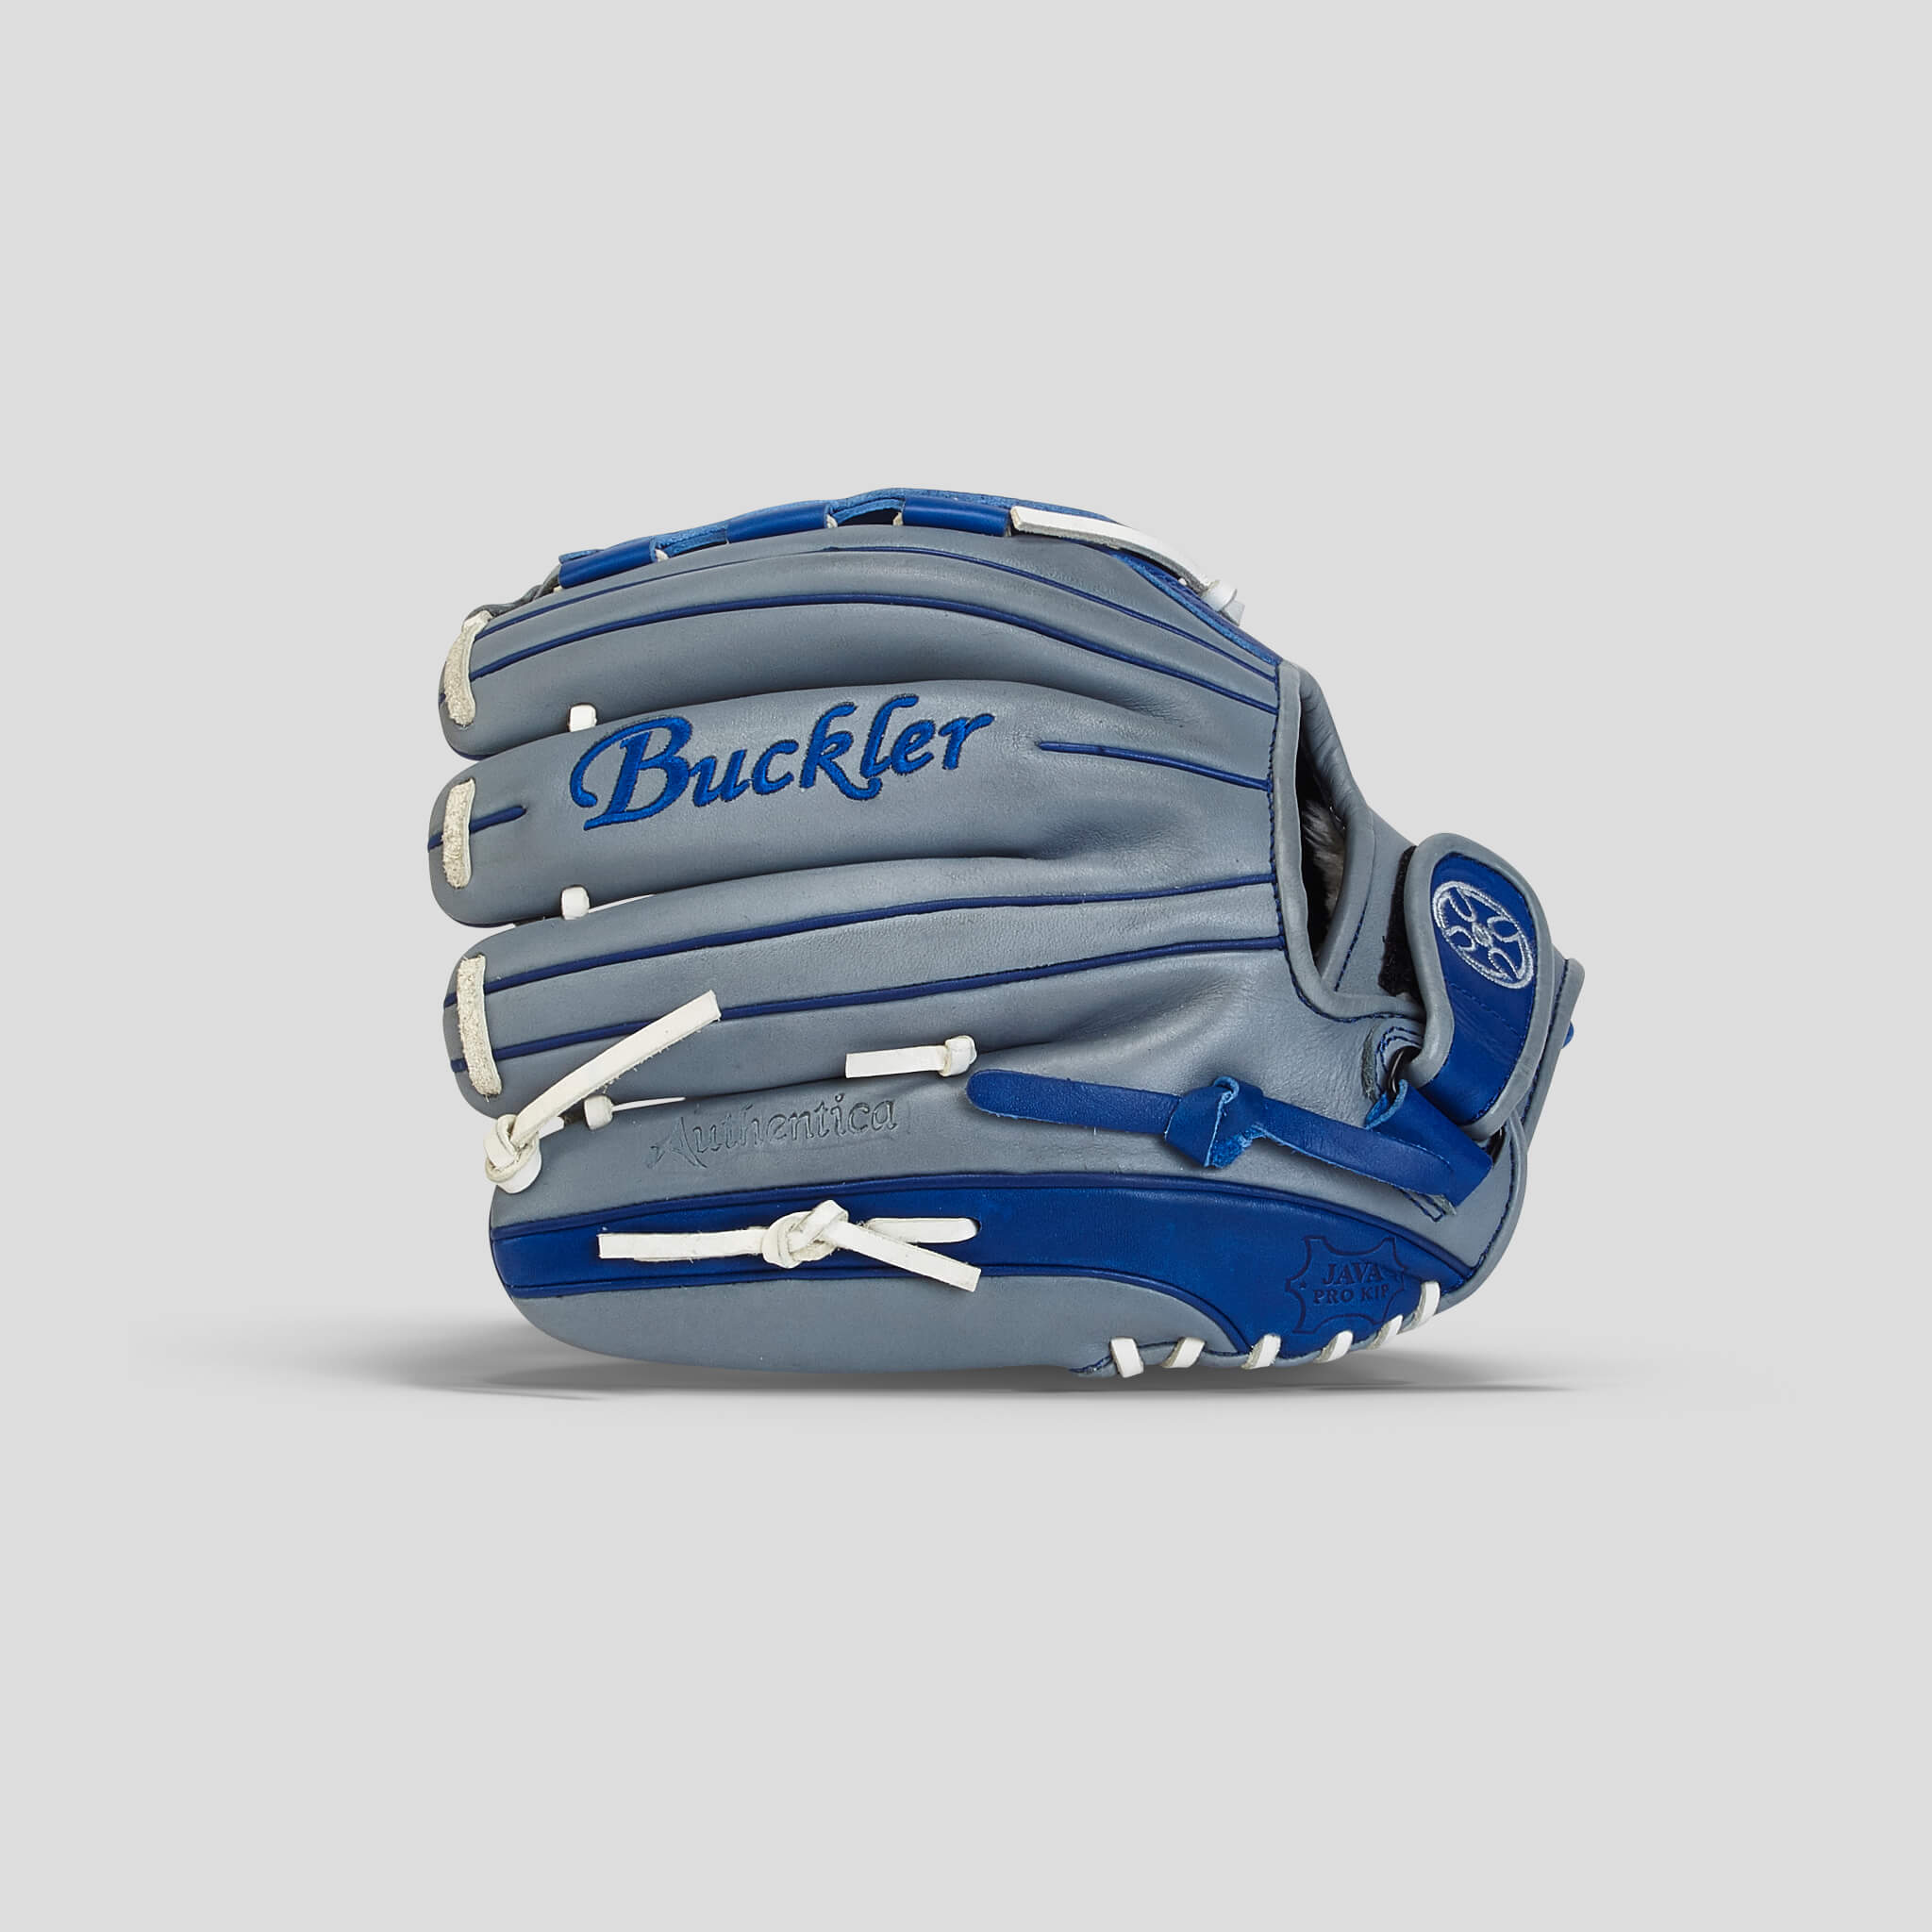 Authentica 12 Fastpitch Basket 5x5 Pitcher's Glove – Buckler